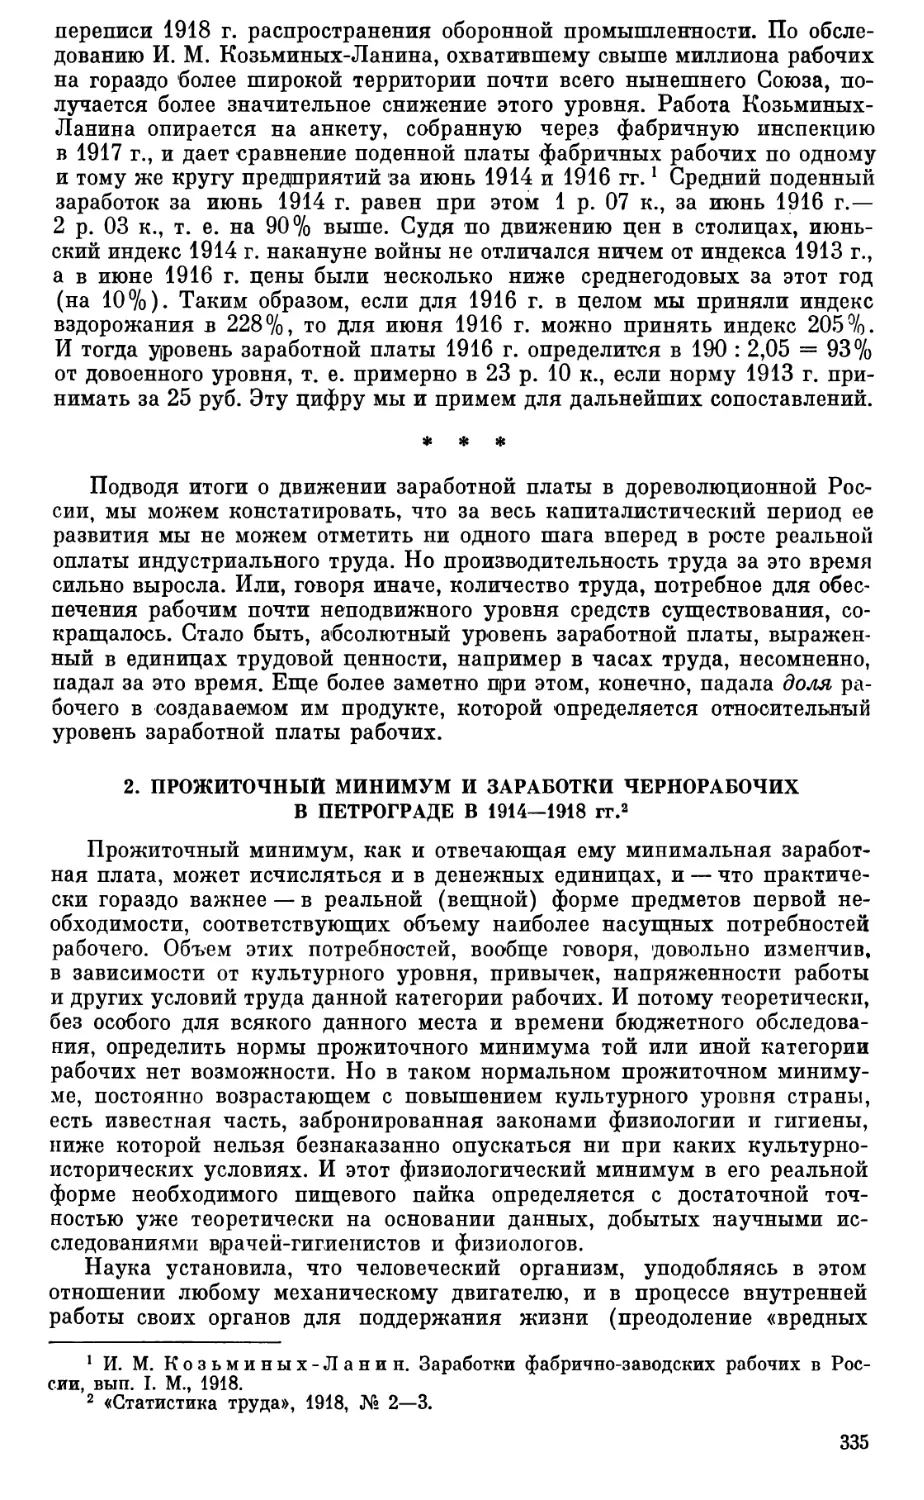 2. Прожиточный минимум и заработки чернорабочих в Петрограде 1914-1918 гг